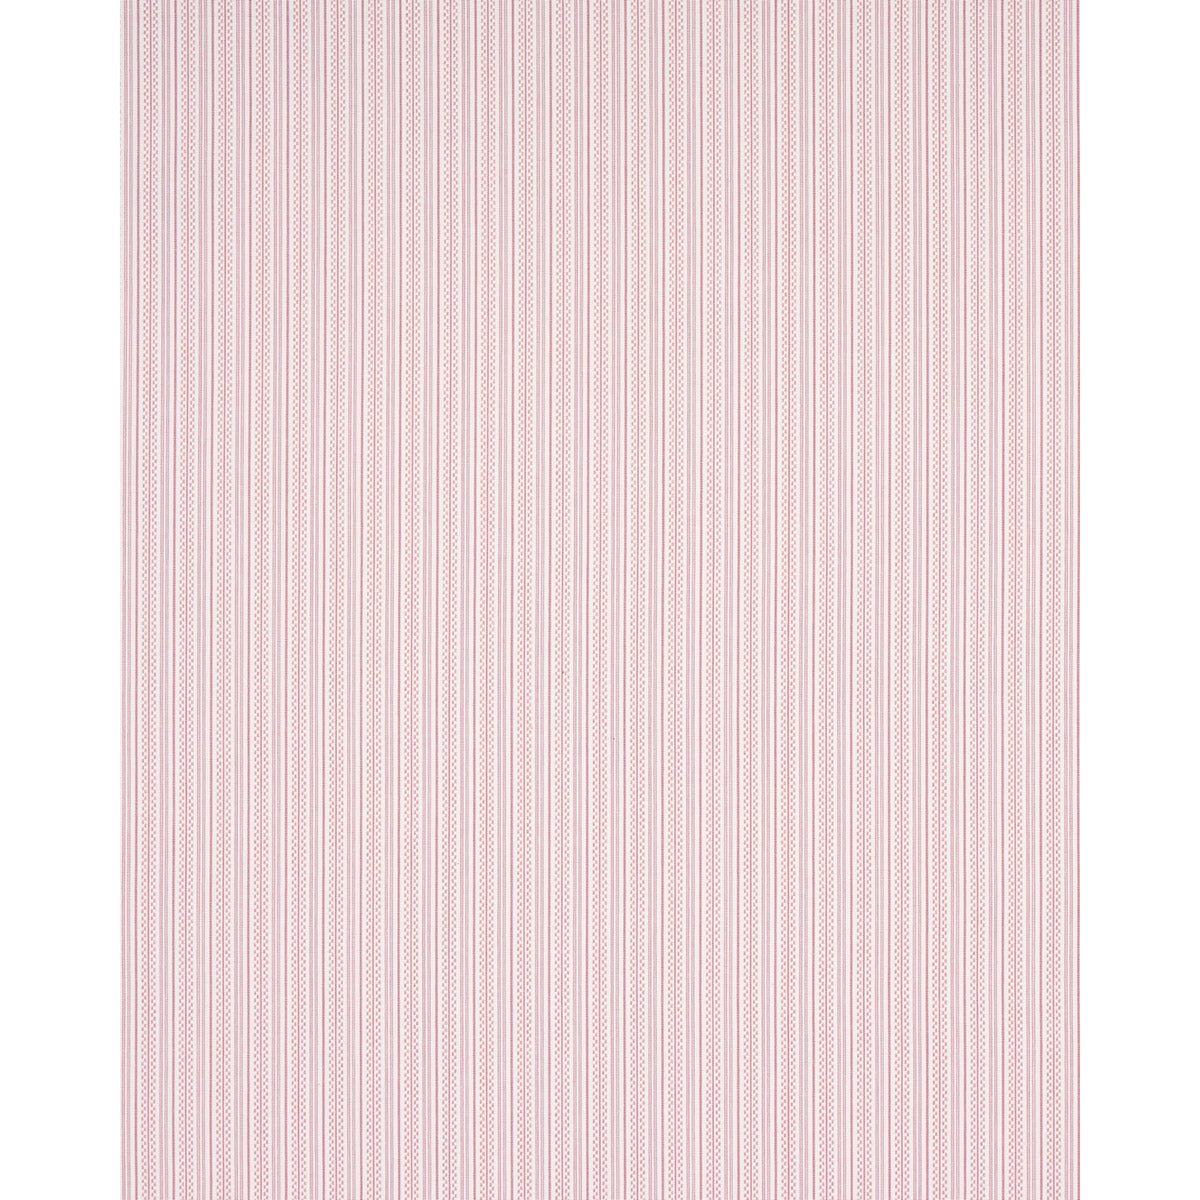 Picnic Florals Pink Stripes Yardage, SKU# C14616-PINK